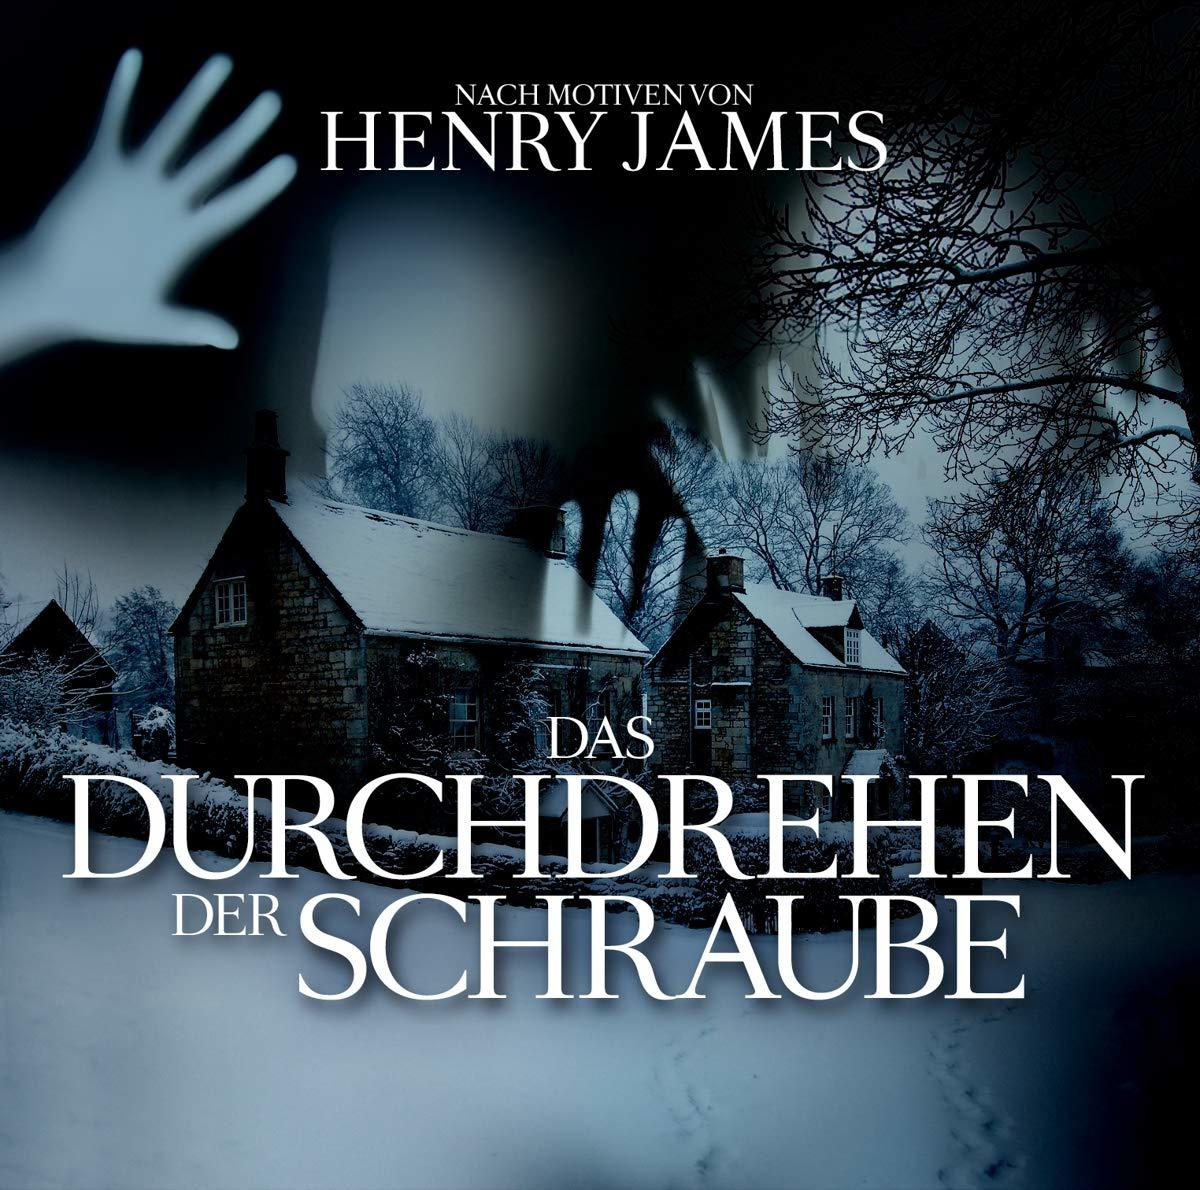 der Durchdrehen - Das (CD) James,Henry-Eftekhari,O.P.-Tippner,T. - Schraube